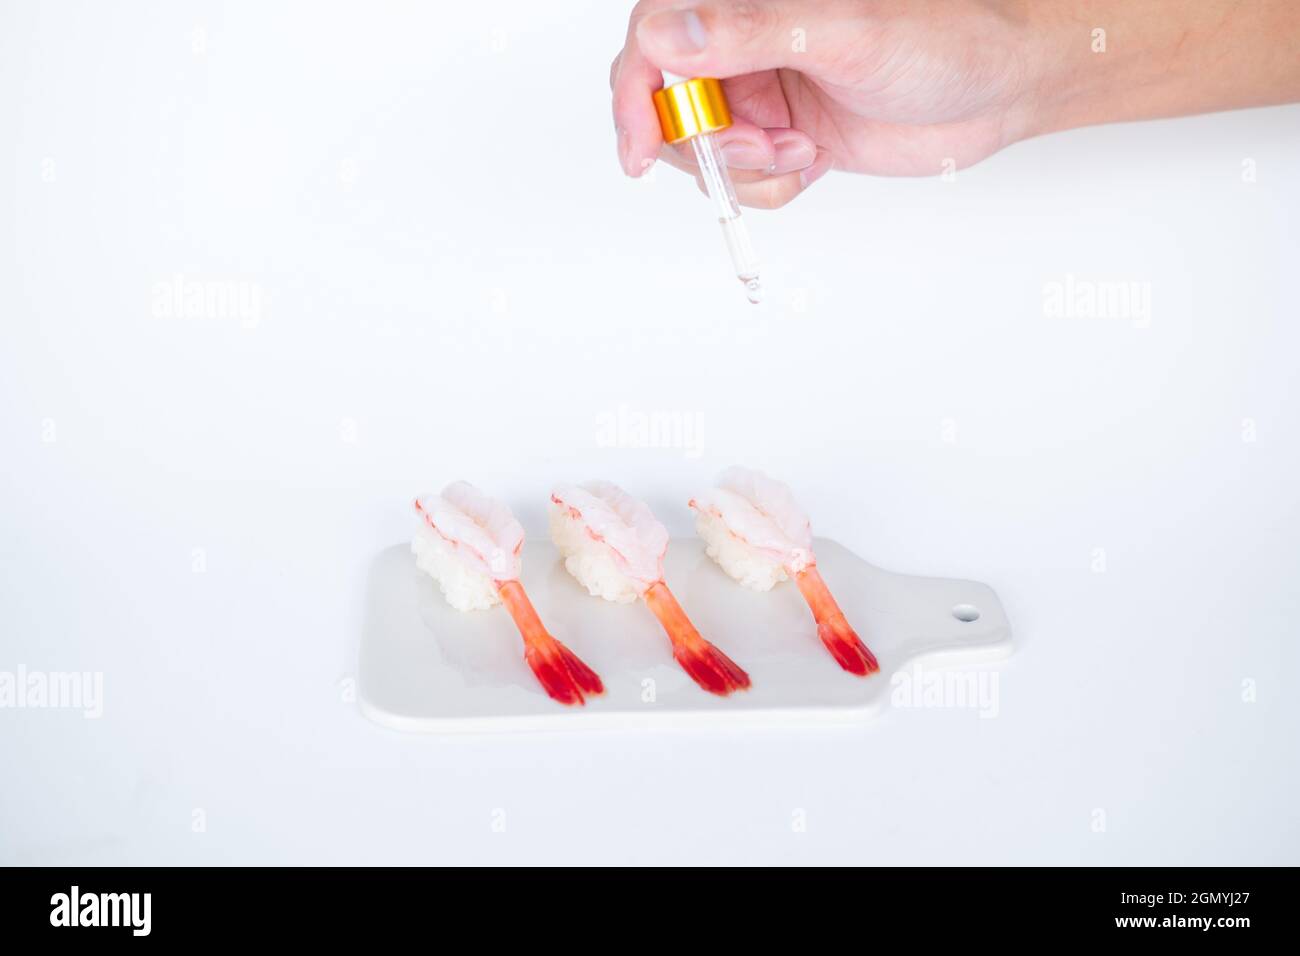 Rohes Shrimp-Garnelen-Sushi im japanischen Restaurant. Sushi - ama Ebi Nigiri auf weißem Brett auf weißem Hintergrund. Cook tropft die Sauce. Hochwertige Fotos Stockfoto